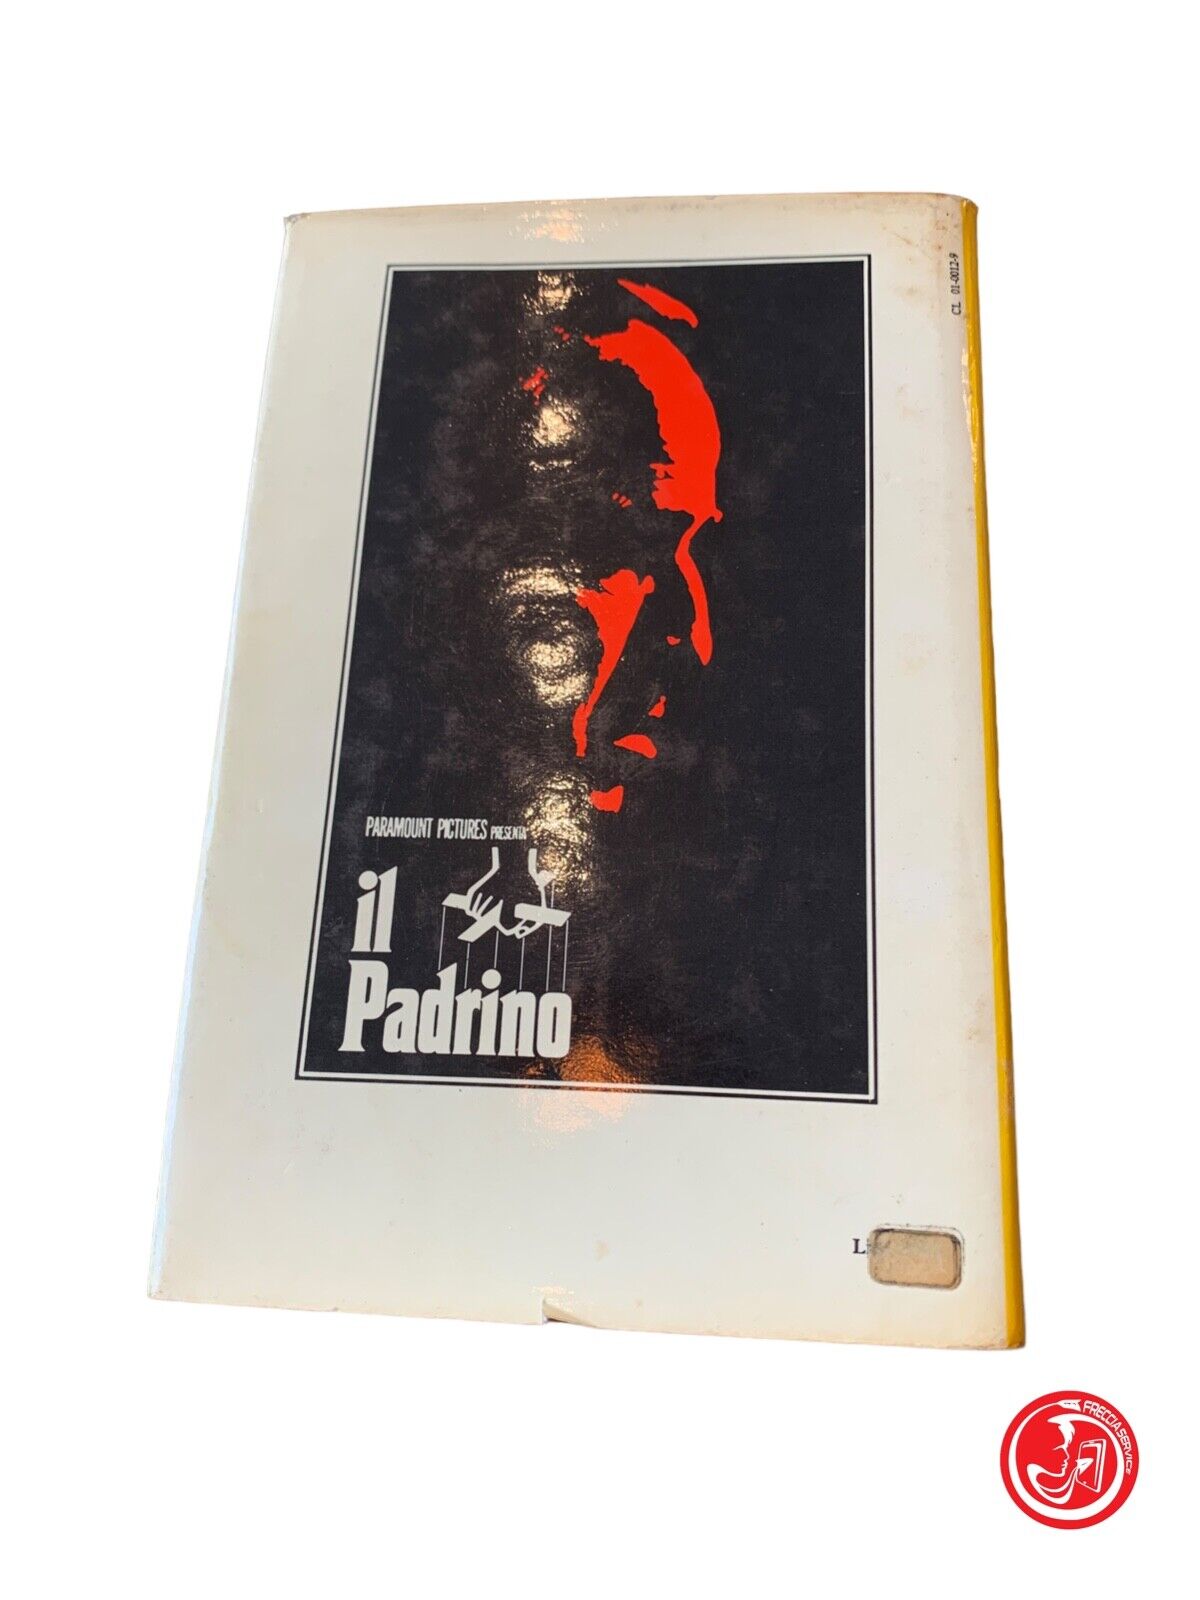 Il Padrino - Mario Puzo - Dall'aglio Editore 1972